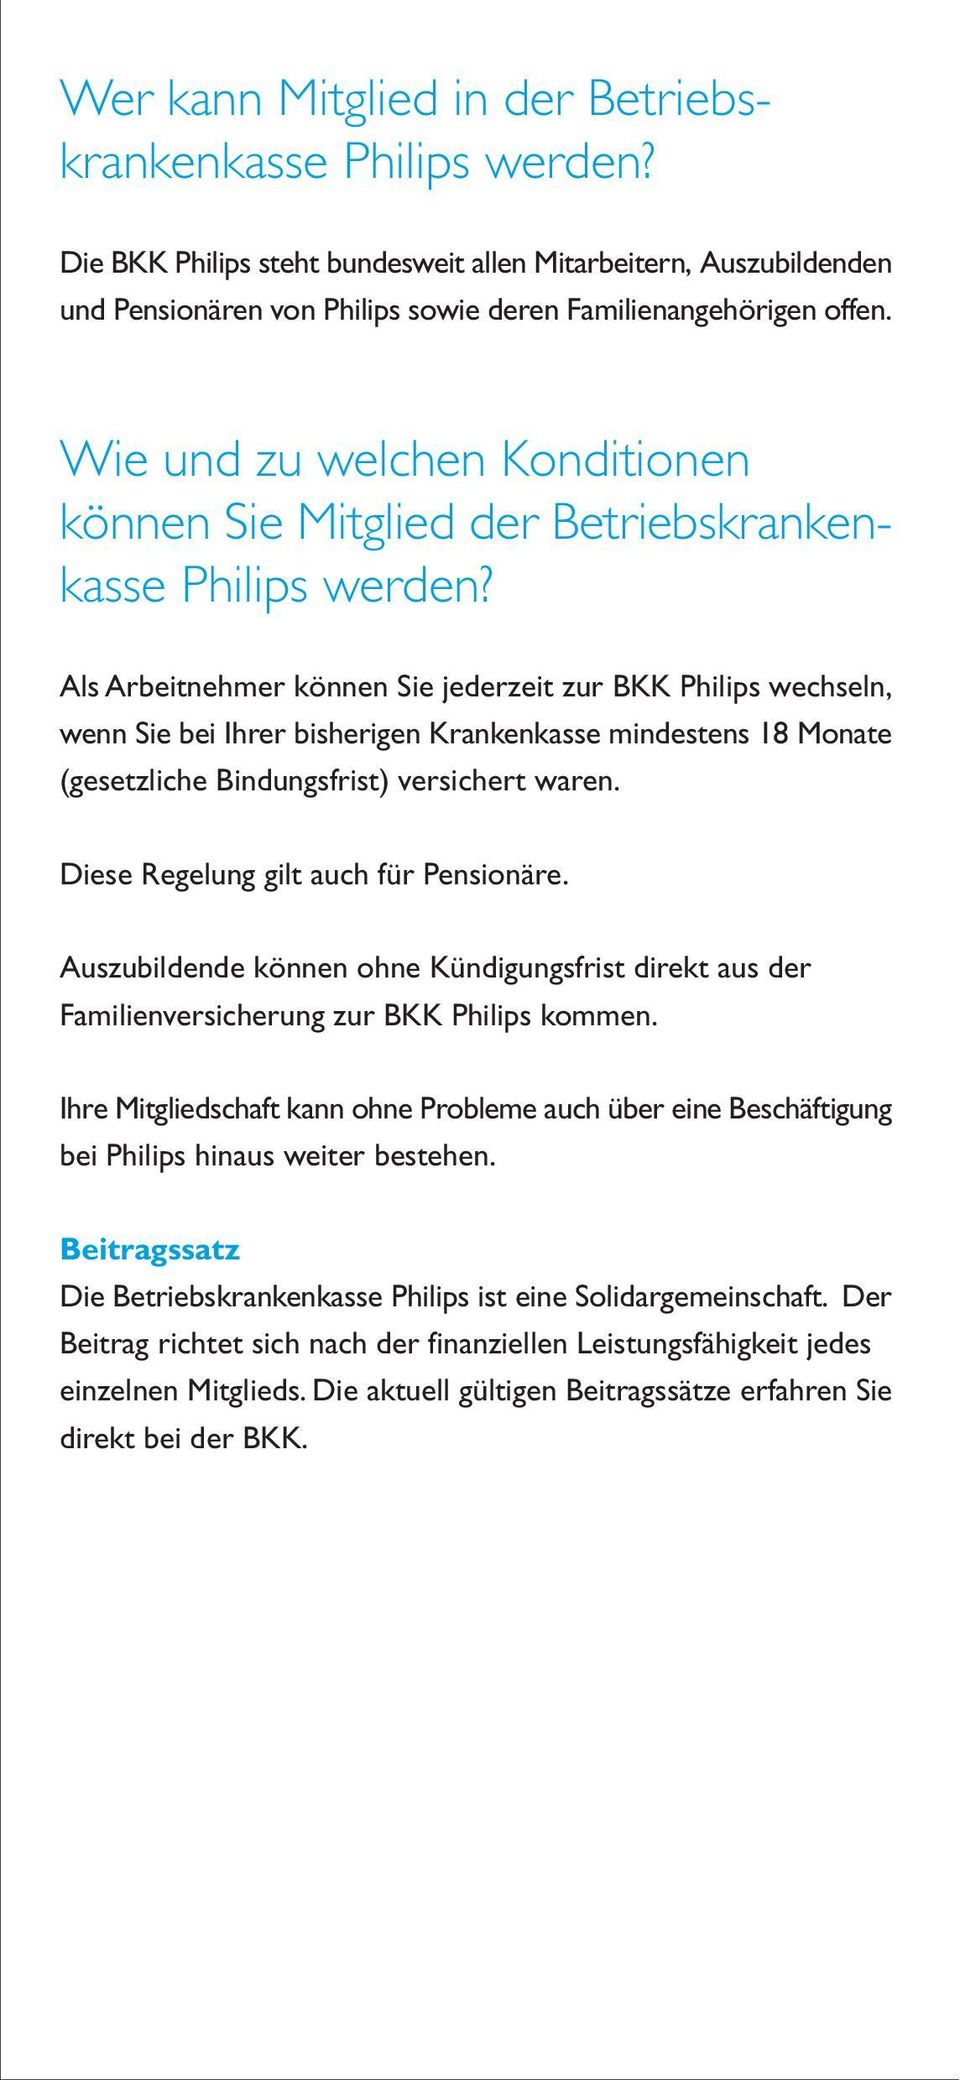 Als Arbeitnehmer können Sie jederzeit zur BKK Philips wechseln, wenn Sie bei Ihrer bisherigen Krankenkasse mindestens 18 Monate (gesetzliche Bindungsfrist) versichert waren.